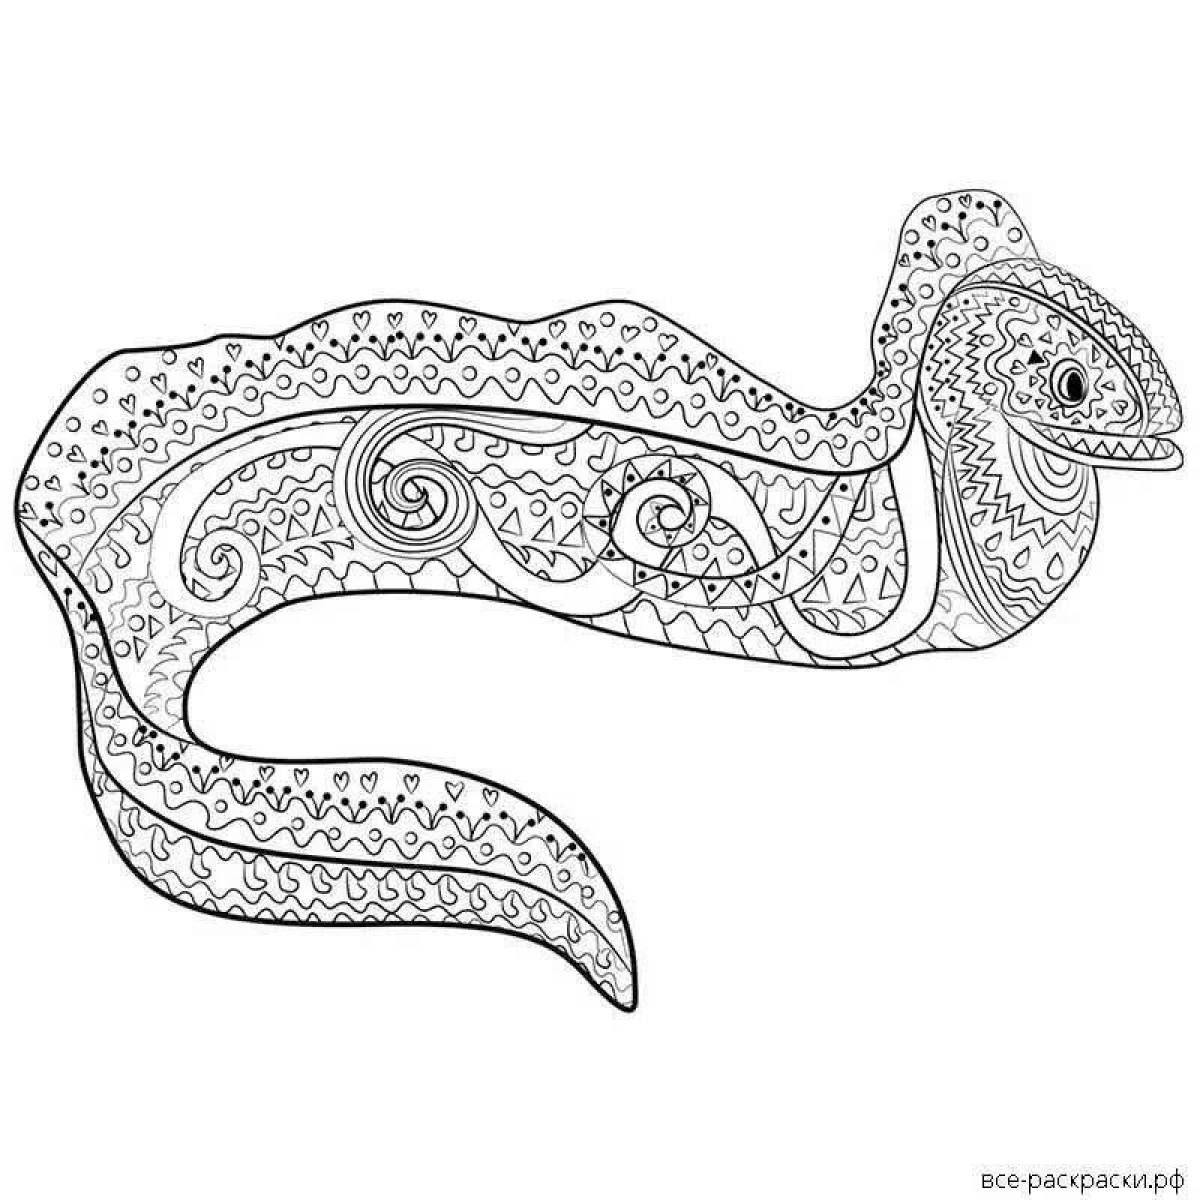 Adorable moray eel coloring page